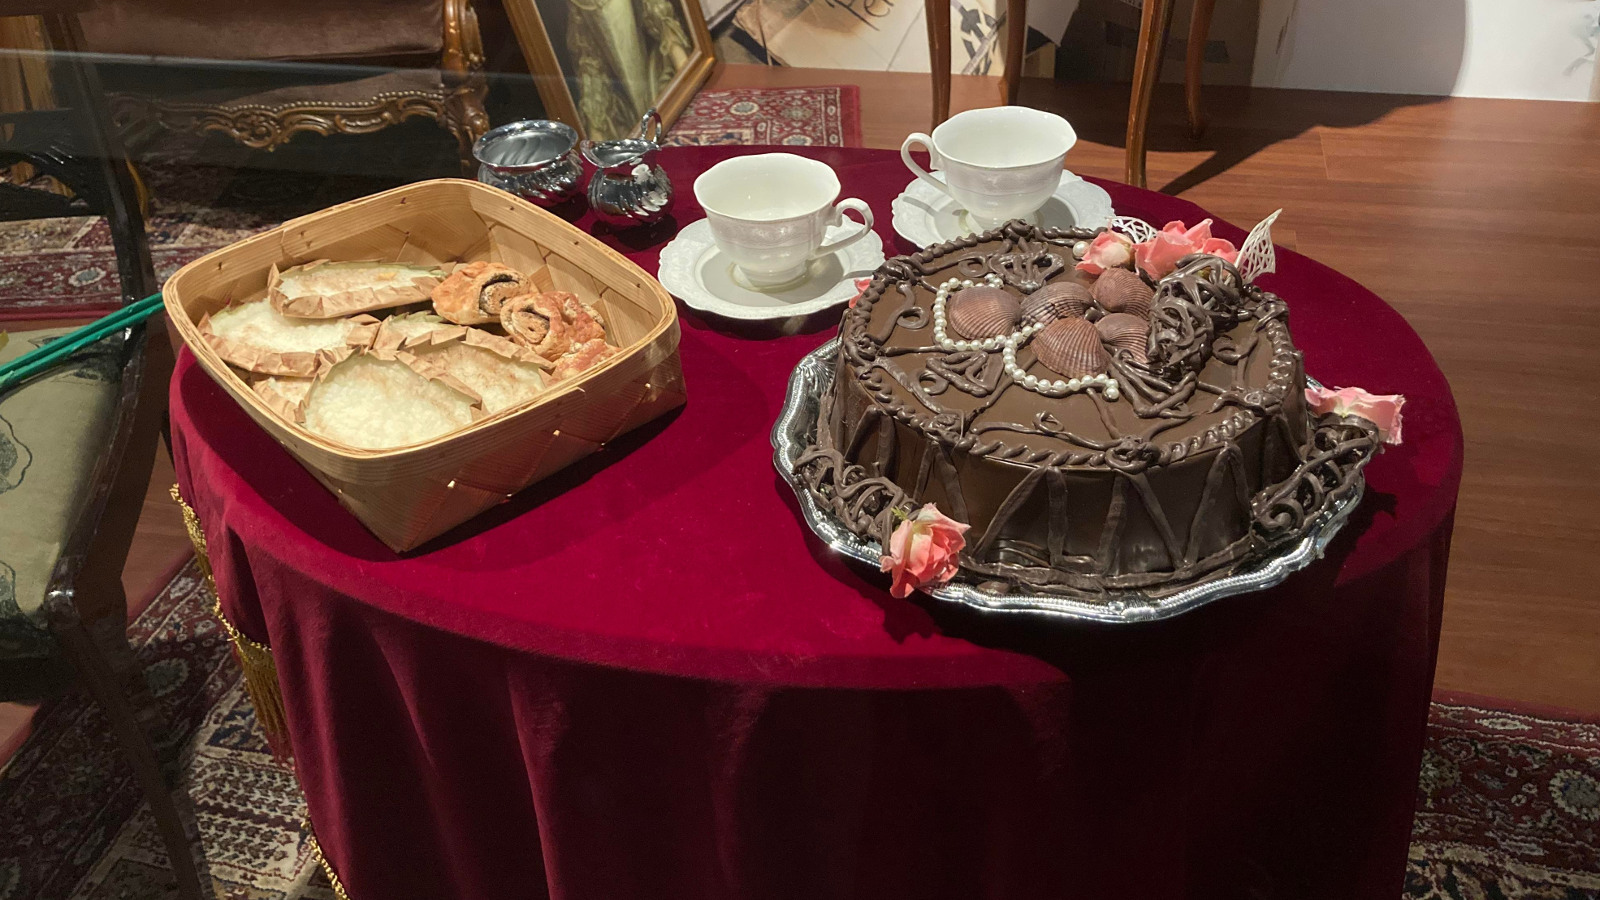 Kuvassa on punaisella samettisella pöytäliinalla oleva pyöreä pöytä, jolla on suklaapäällysteinen koristeltu täytekakku, piirakkakori ja kaksi kahvikuppia.